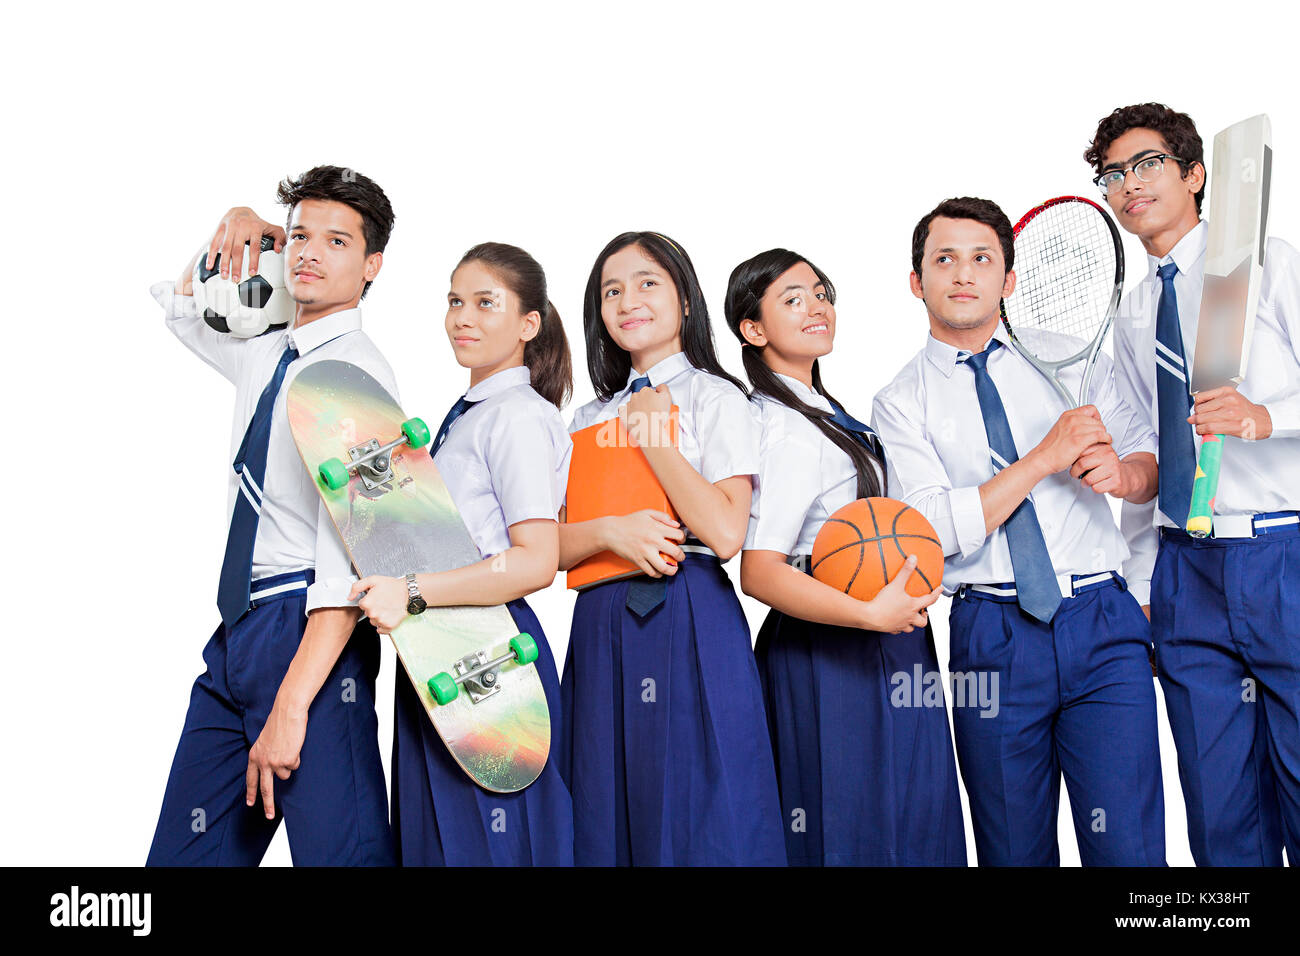 Gruppe indischer Junge Schüler Sport Spieler zusammen stehende Bestimmung Stockfoto